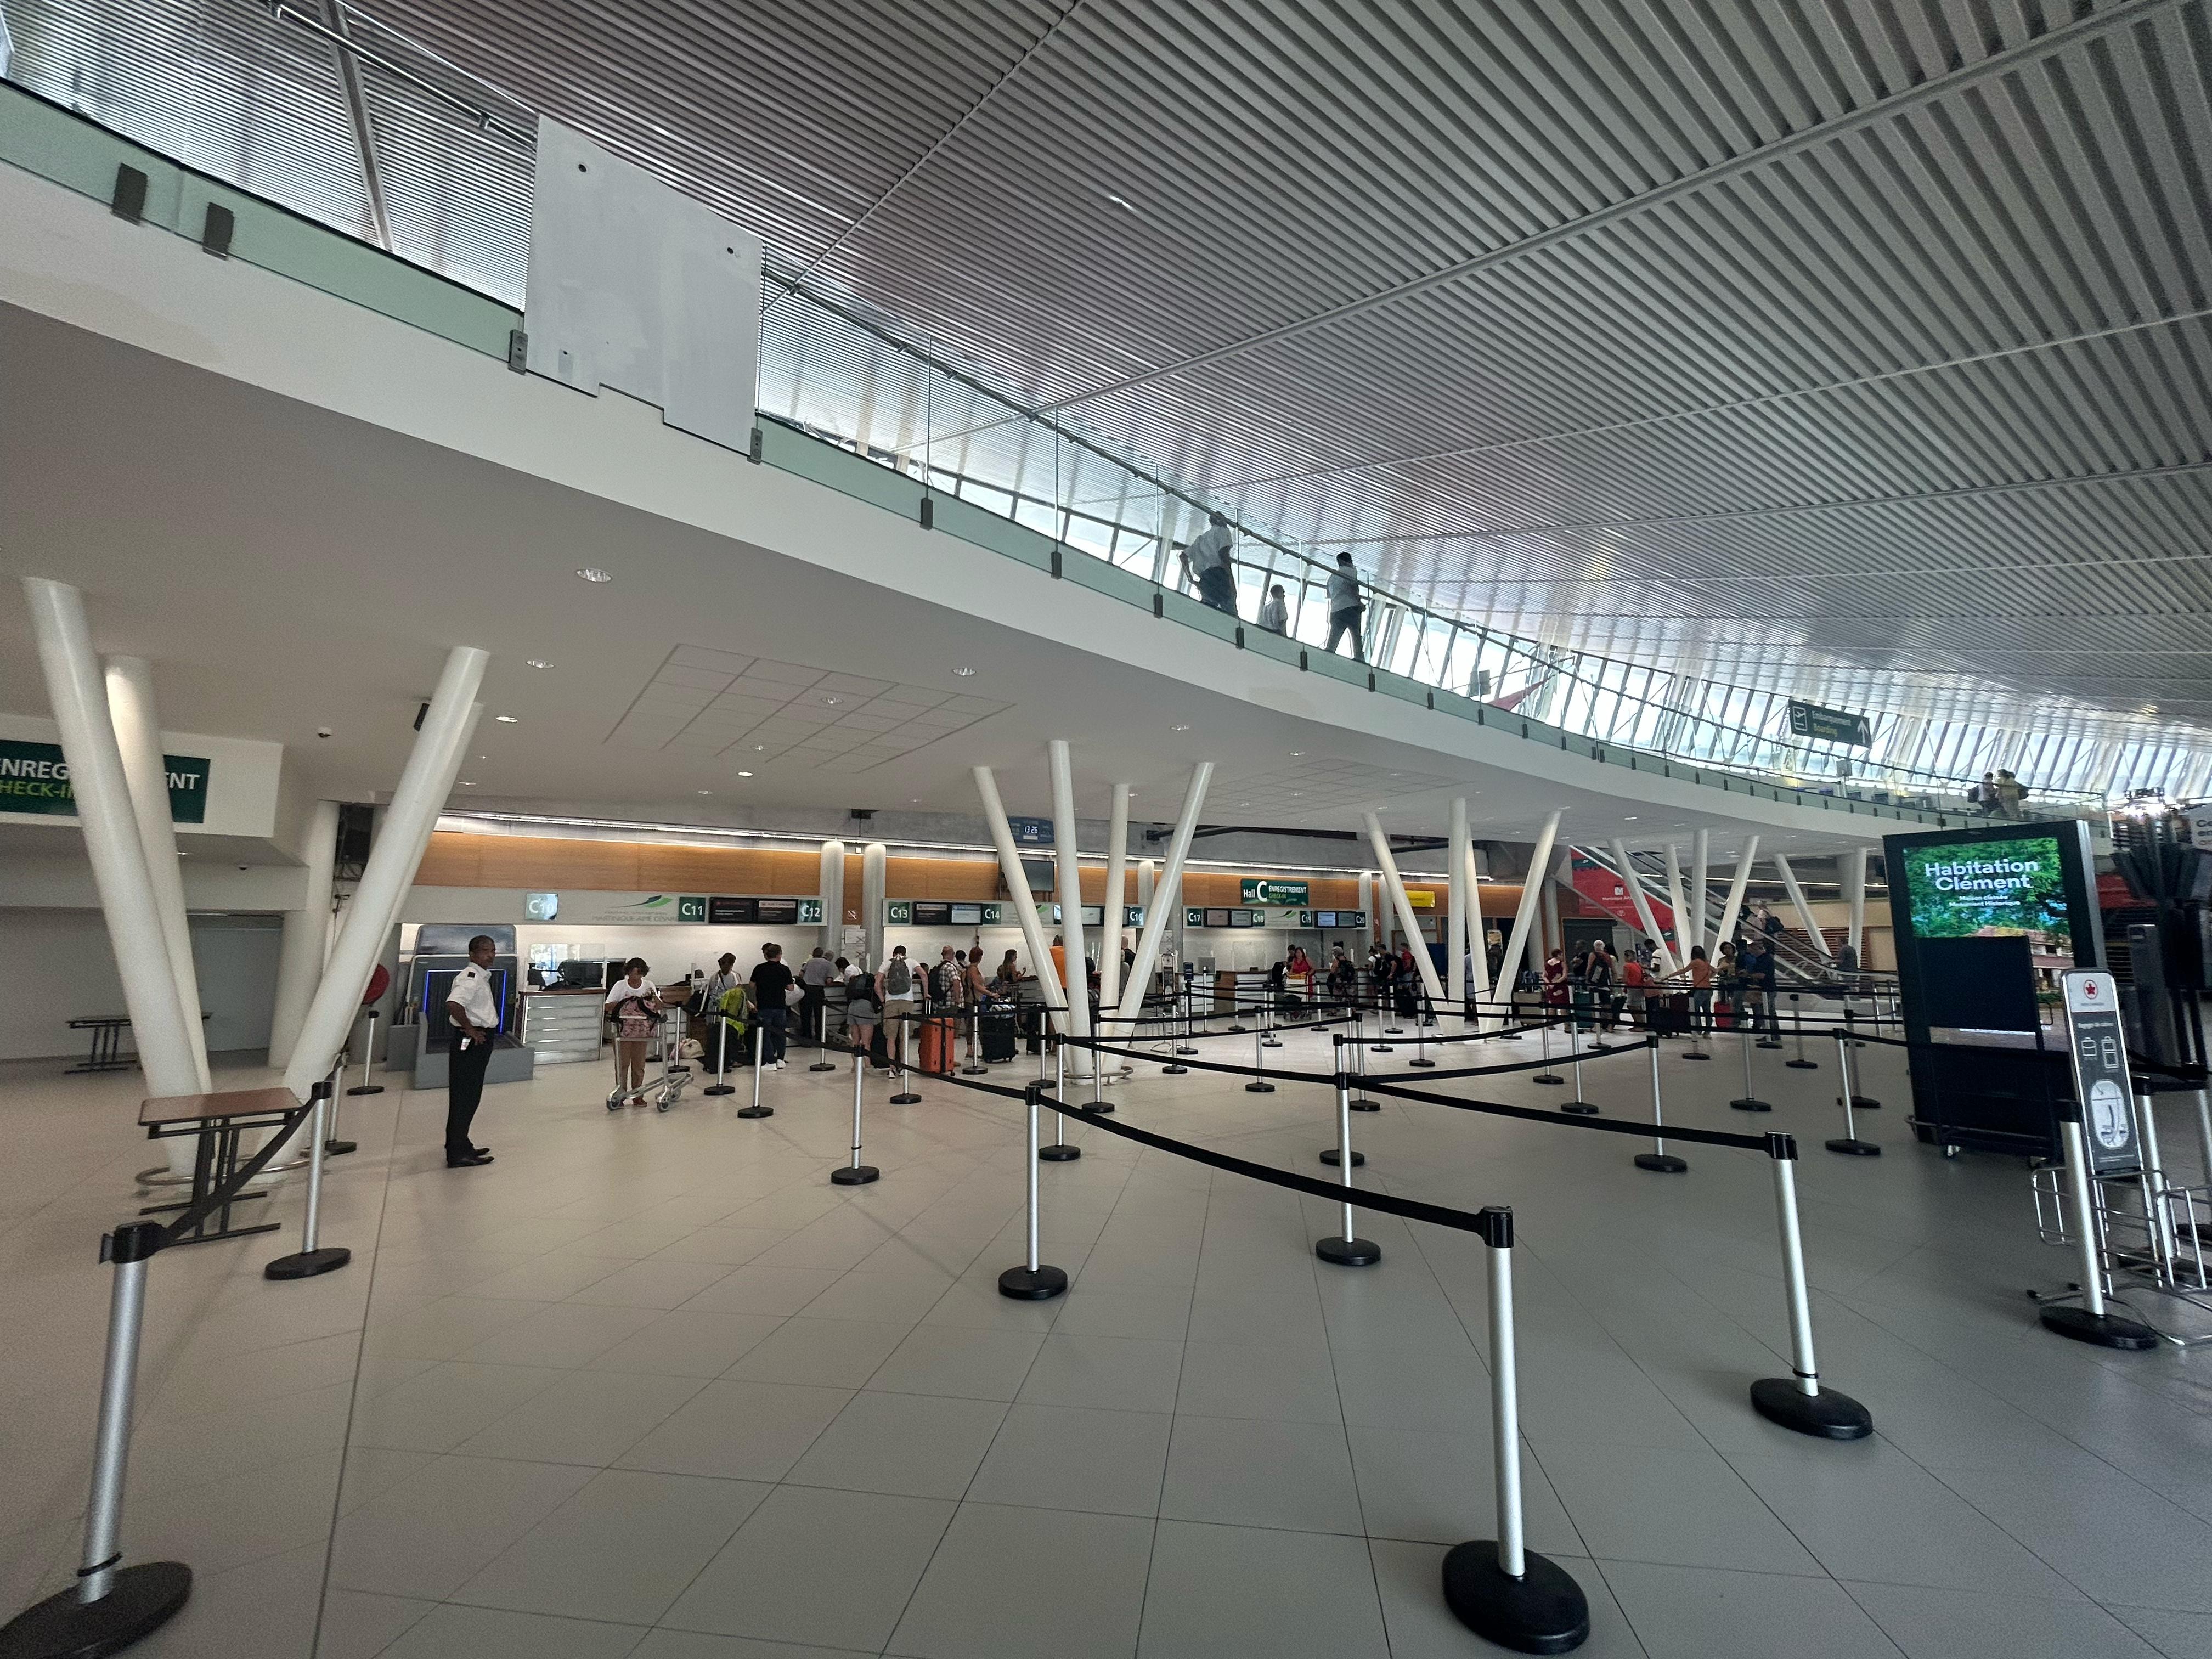     Coûts d'extension de l'aéroport de Martinique : la Chambre Régionale des Comptes pointe des dérives

